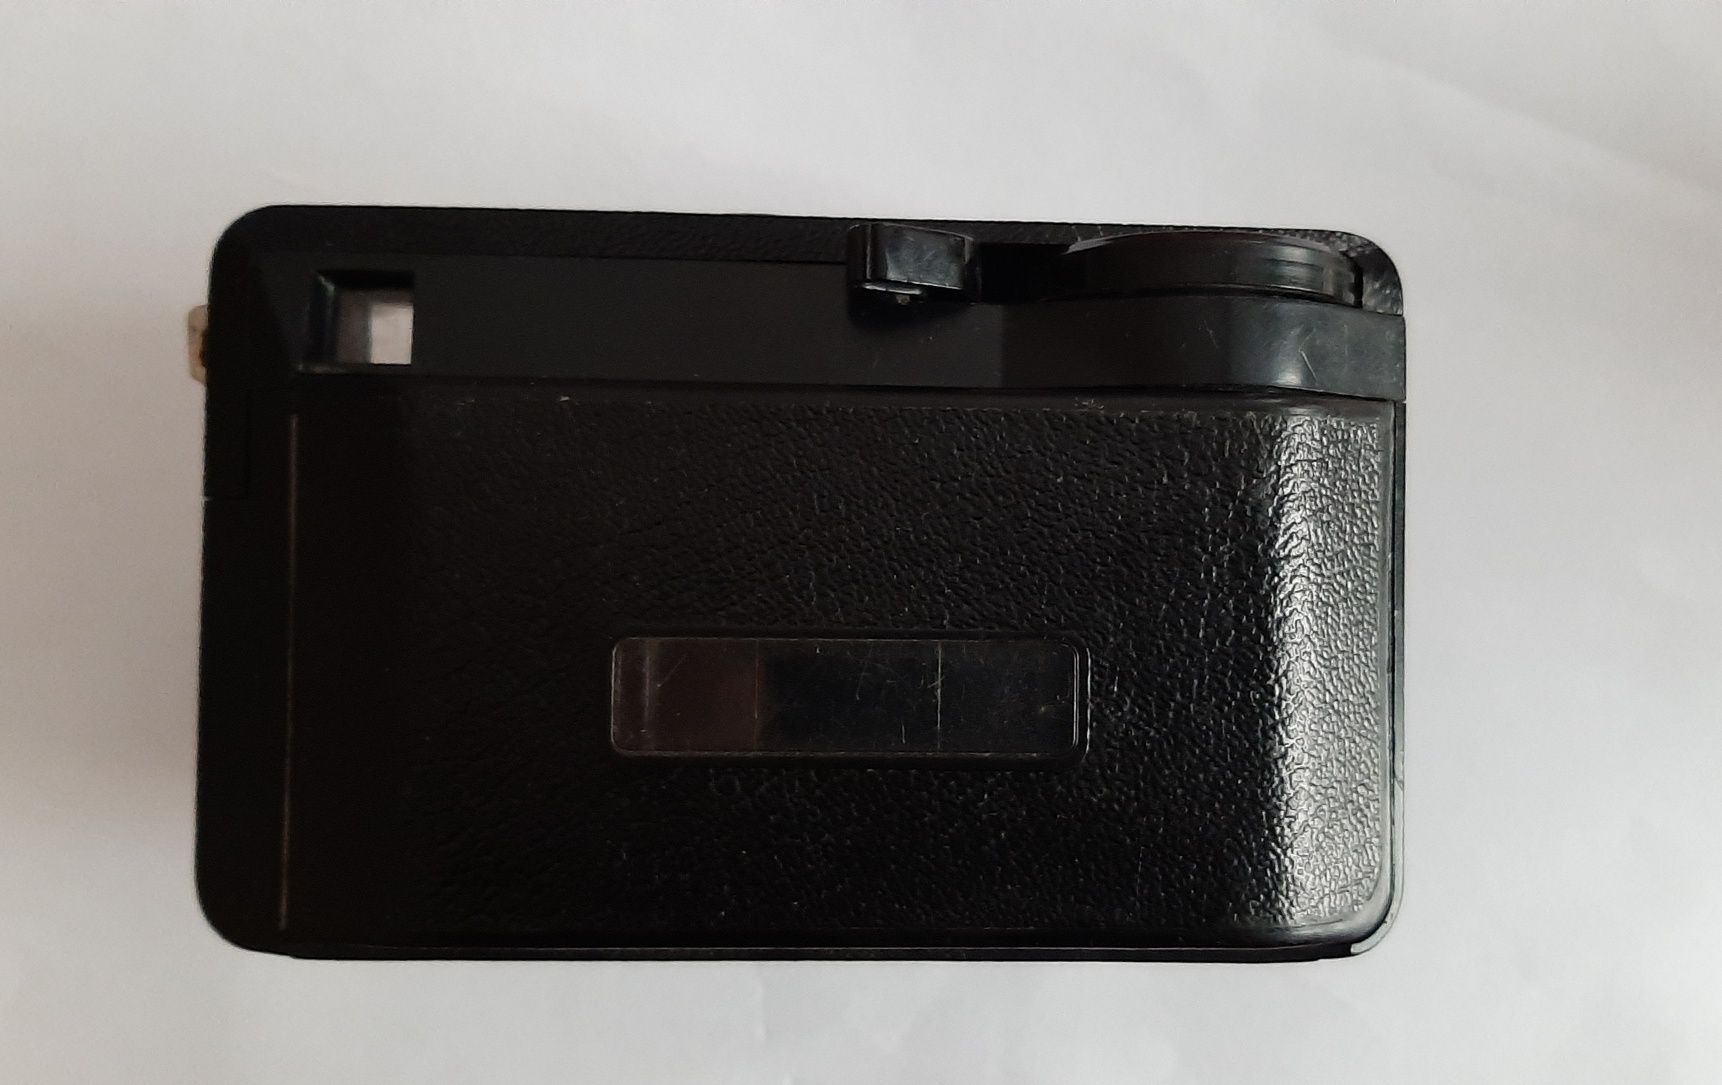 Aparat analogowy Kodak insomatic 56 X.